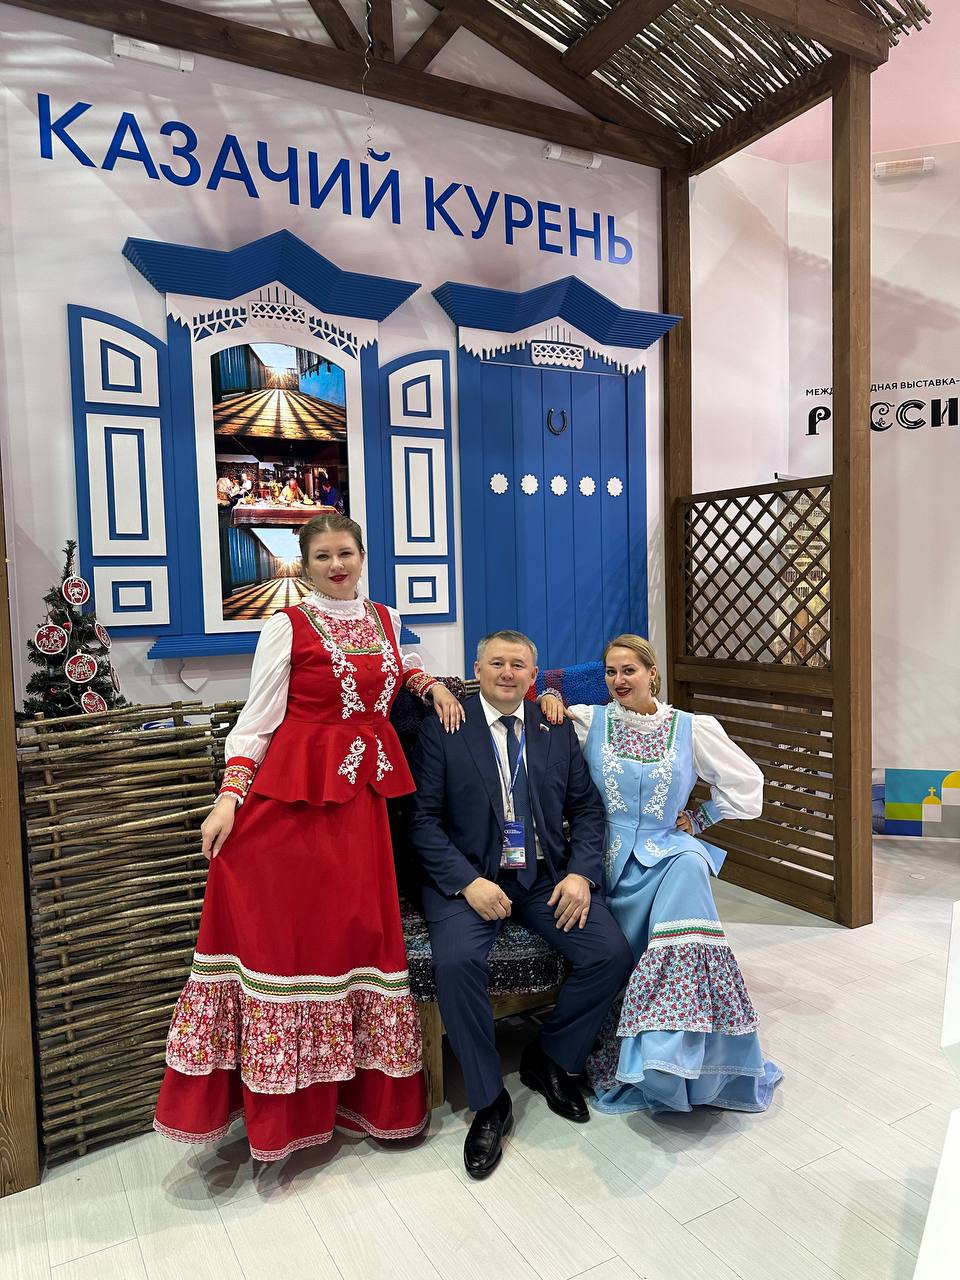 Фото Депутат Госдумы от Бурятии опубликовал фото в окружении красивых девушек